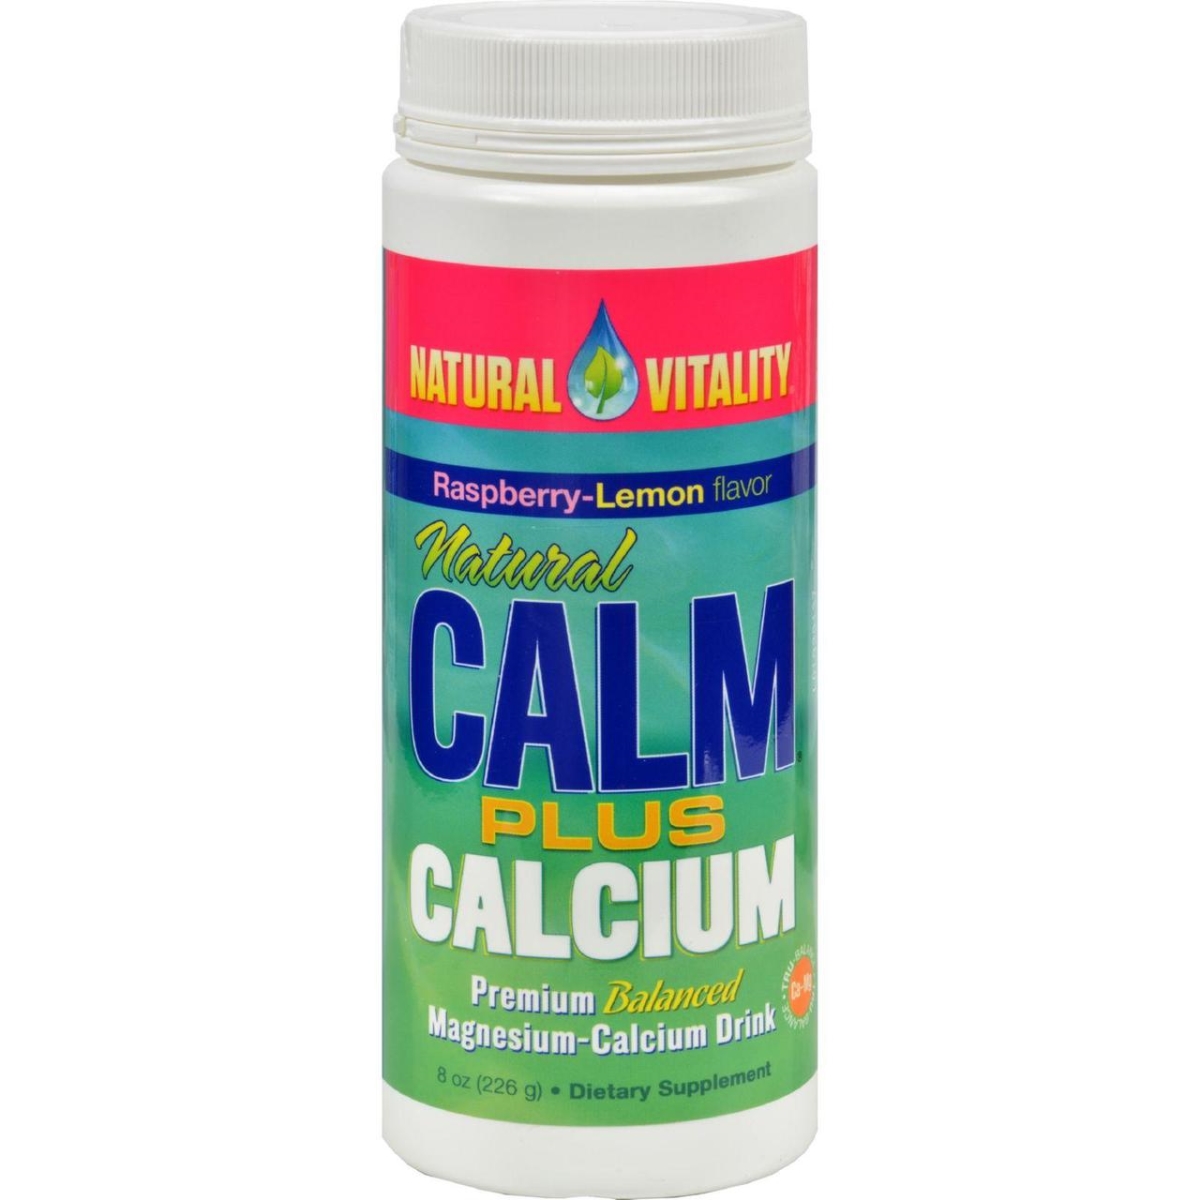 Hg0821751 8 Oz Natural Calm Plus Calcium Organic Raspberry-lemon